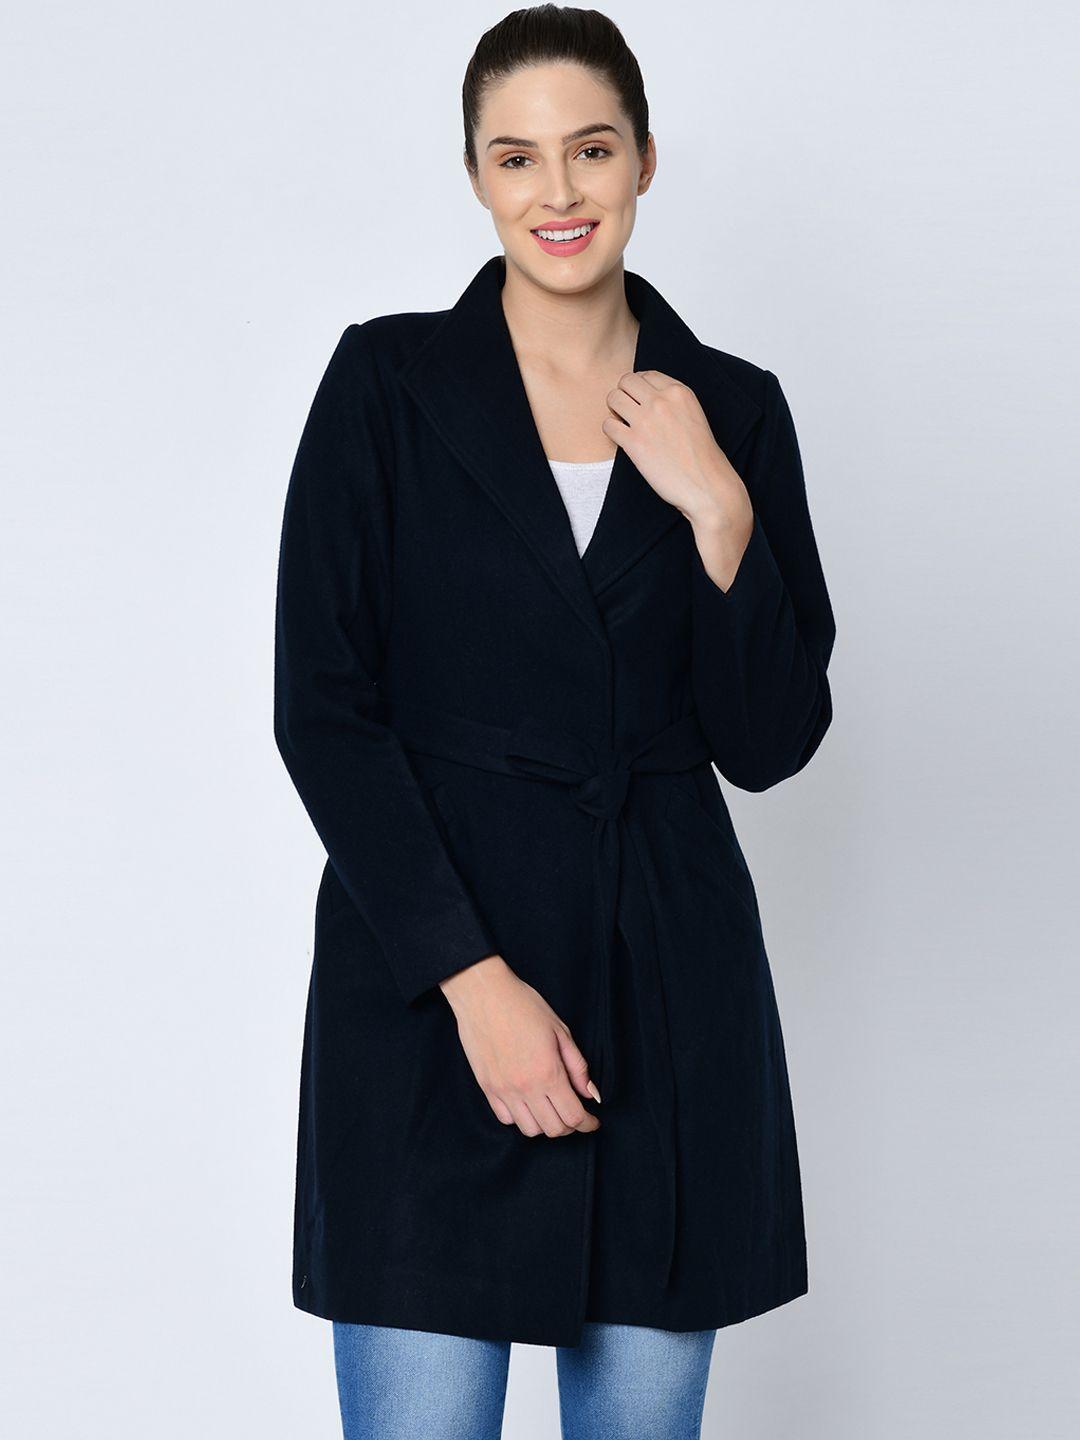 owncraft women navy blue solid wool overcoat